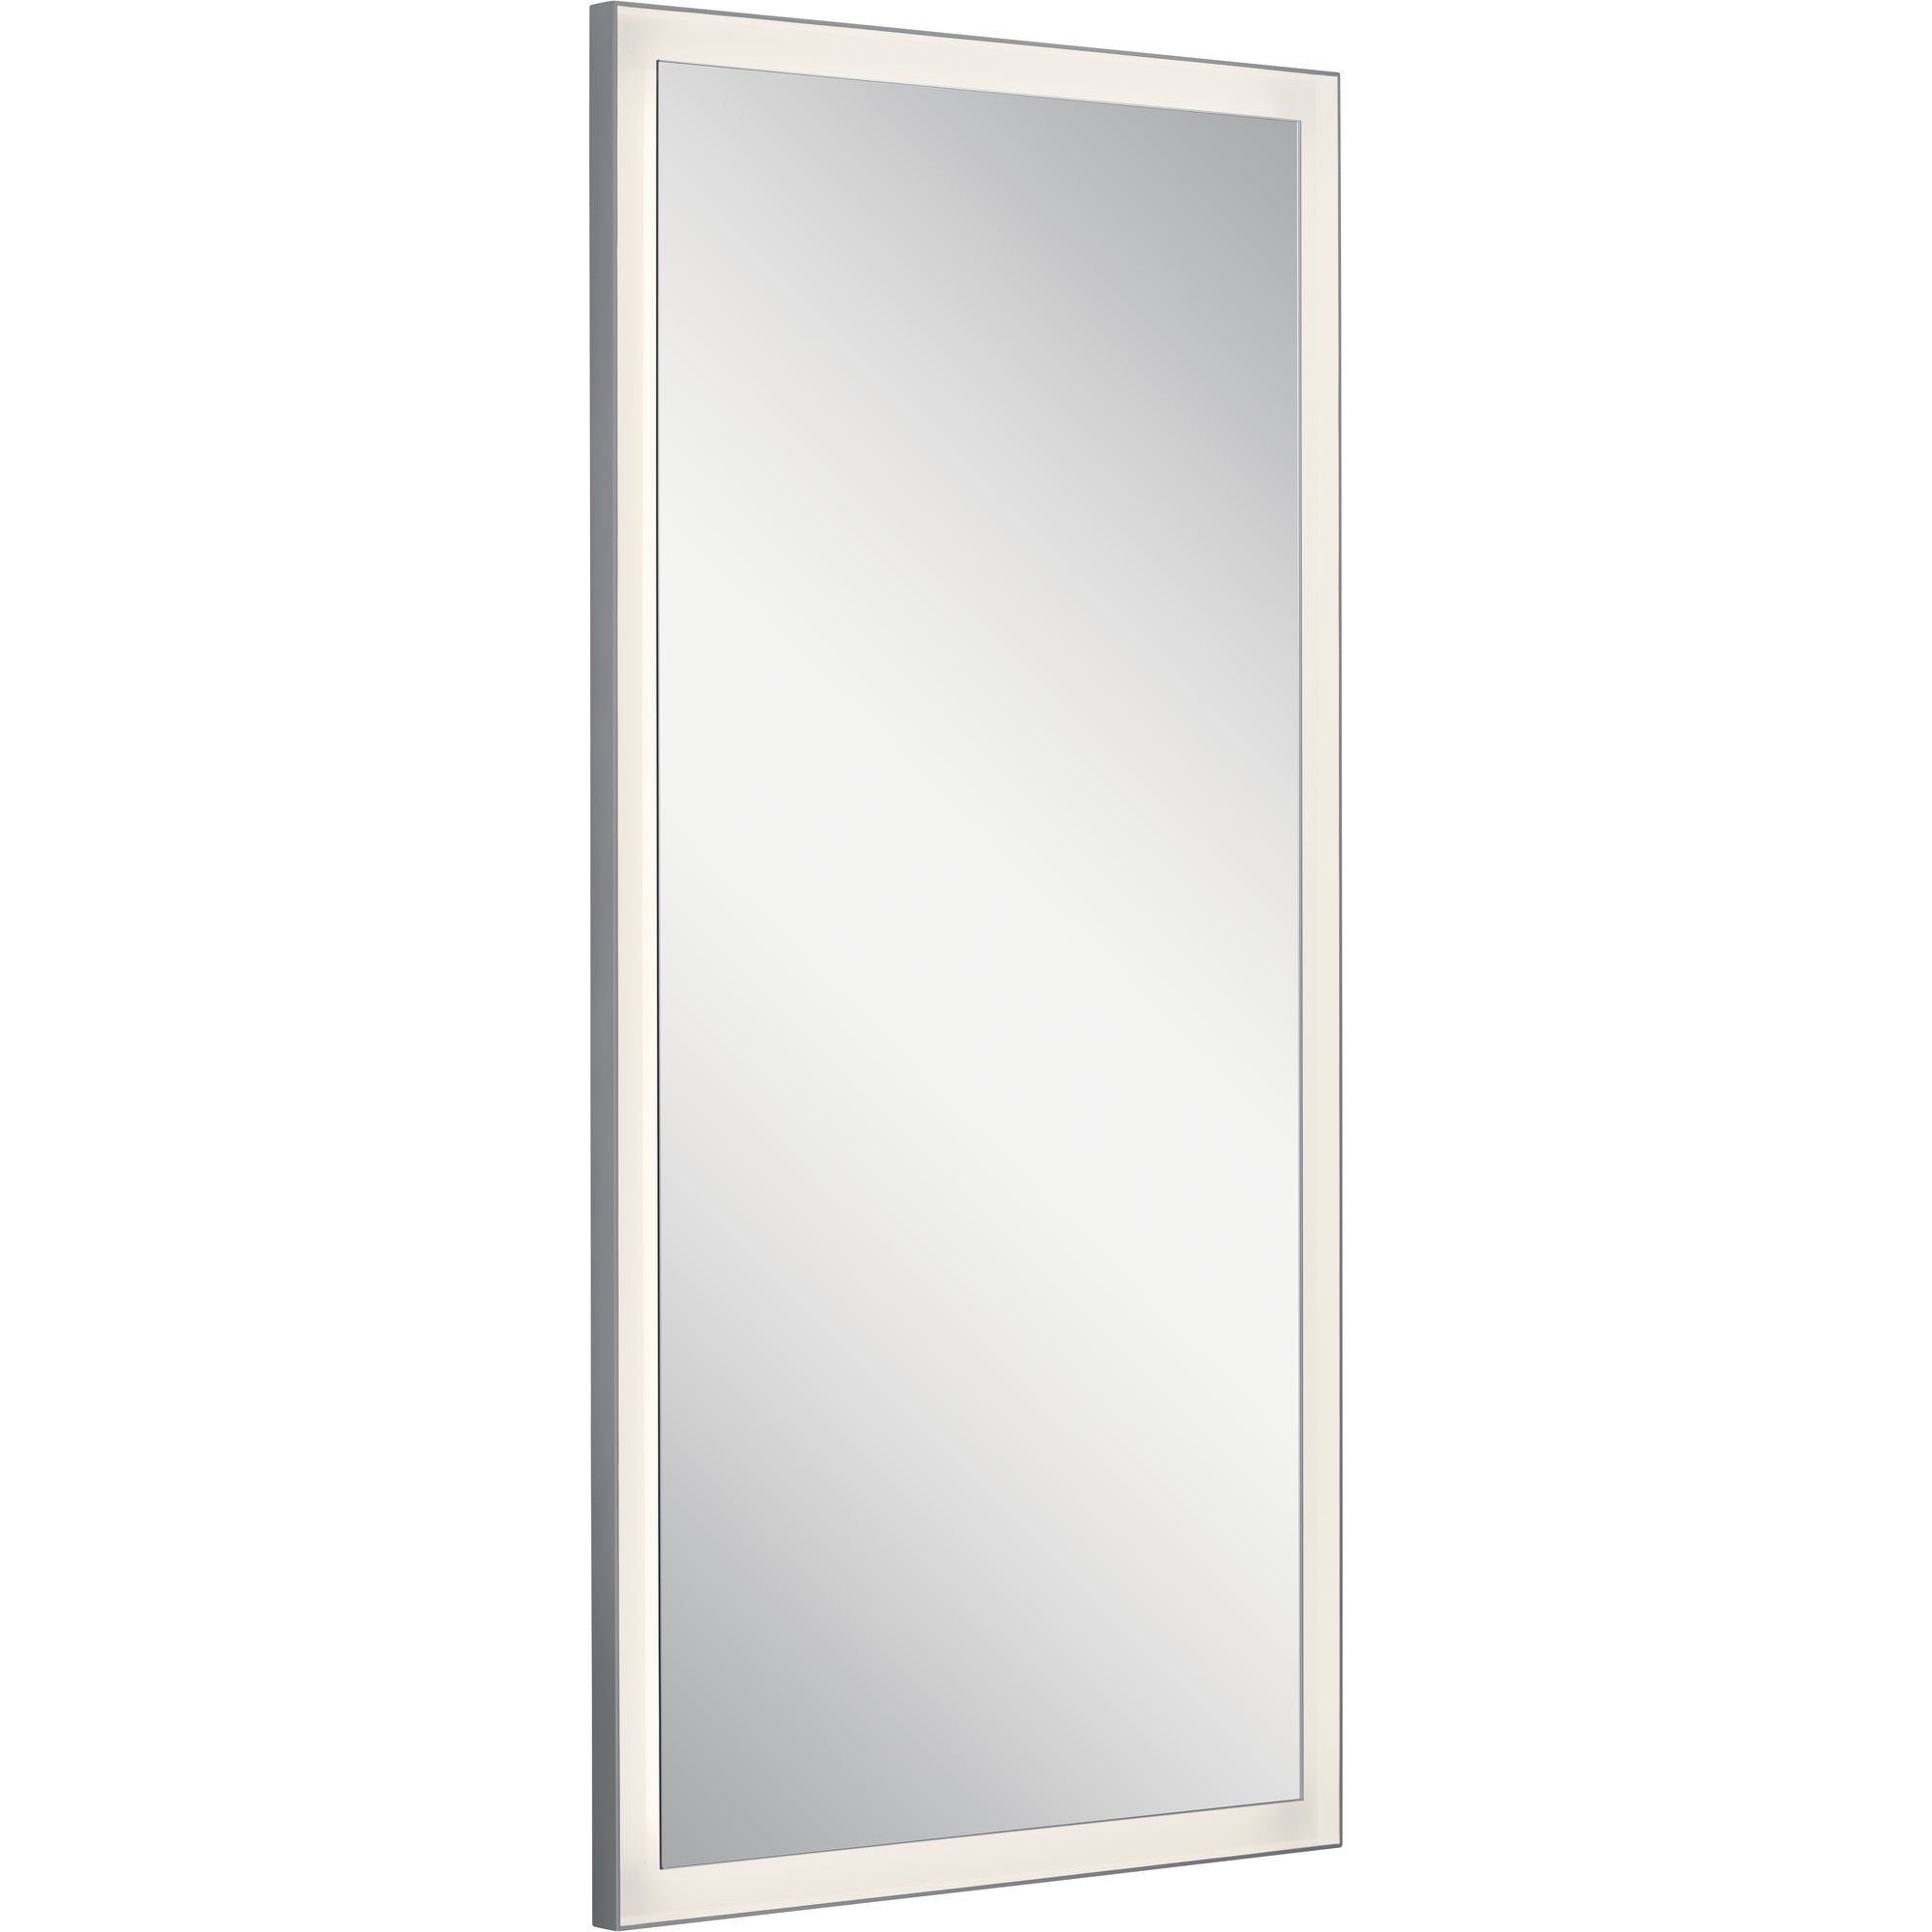 RYAME Lighting mirror Silver - 84172 | ELAN